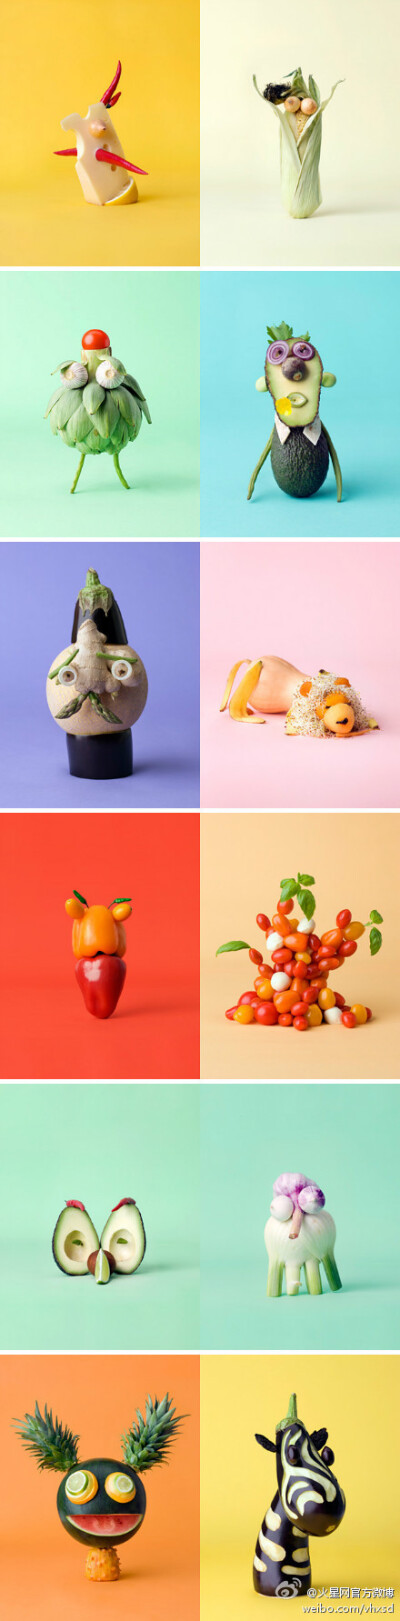 一组【蔬菜水果造型升级版】希望能给你带来好心情~这是一组来自瑞典摄影师、艺术家Carl Kleiner的作品，这位艺术家现居斯德哥尔摩，他擅长使用水果和蔬菜制作造型，漂亮又卡通。筒子们走起~